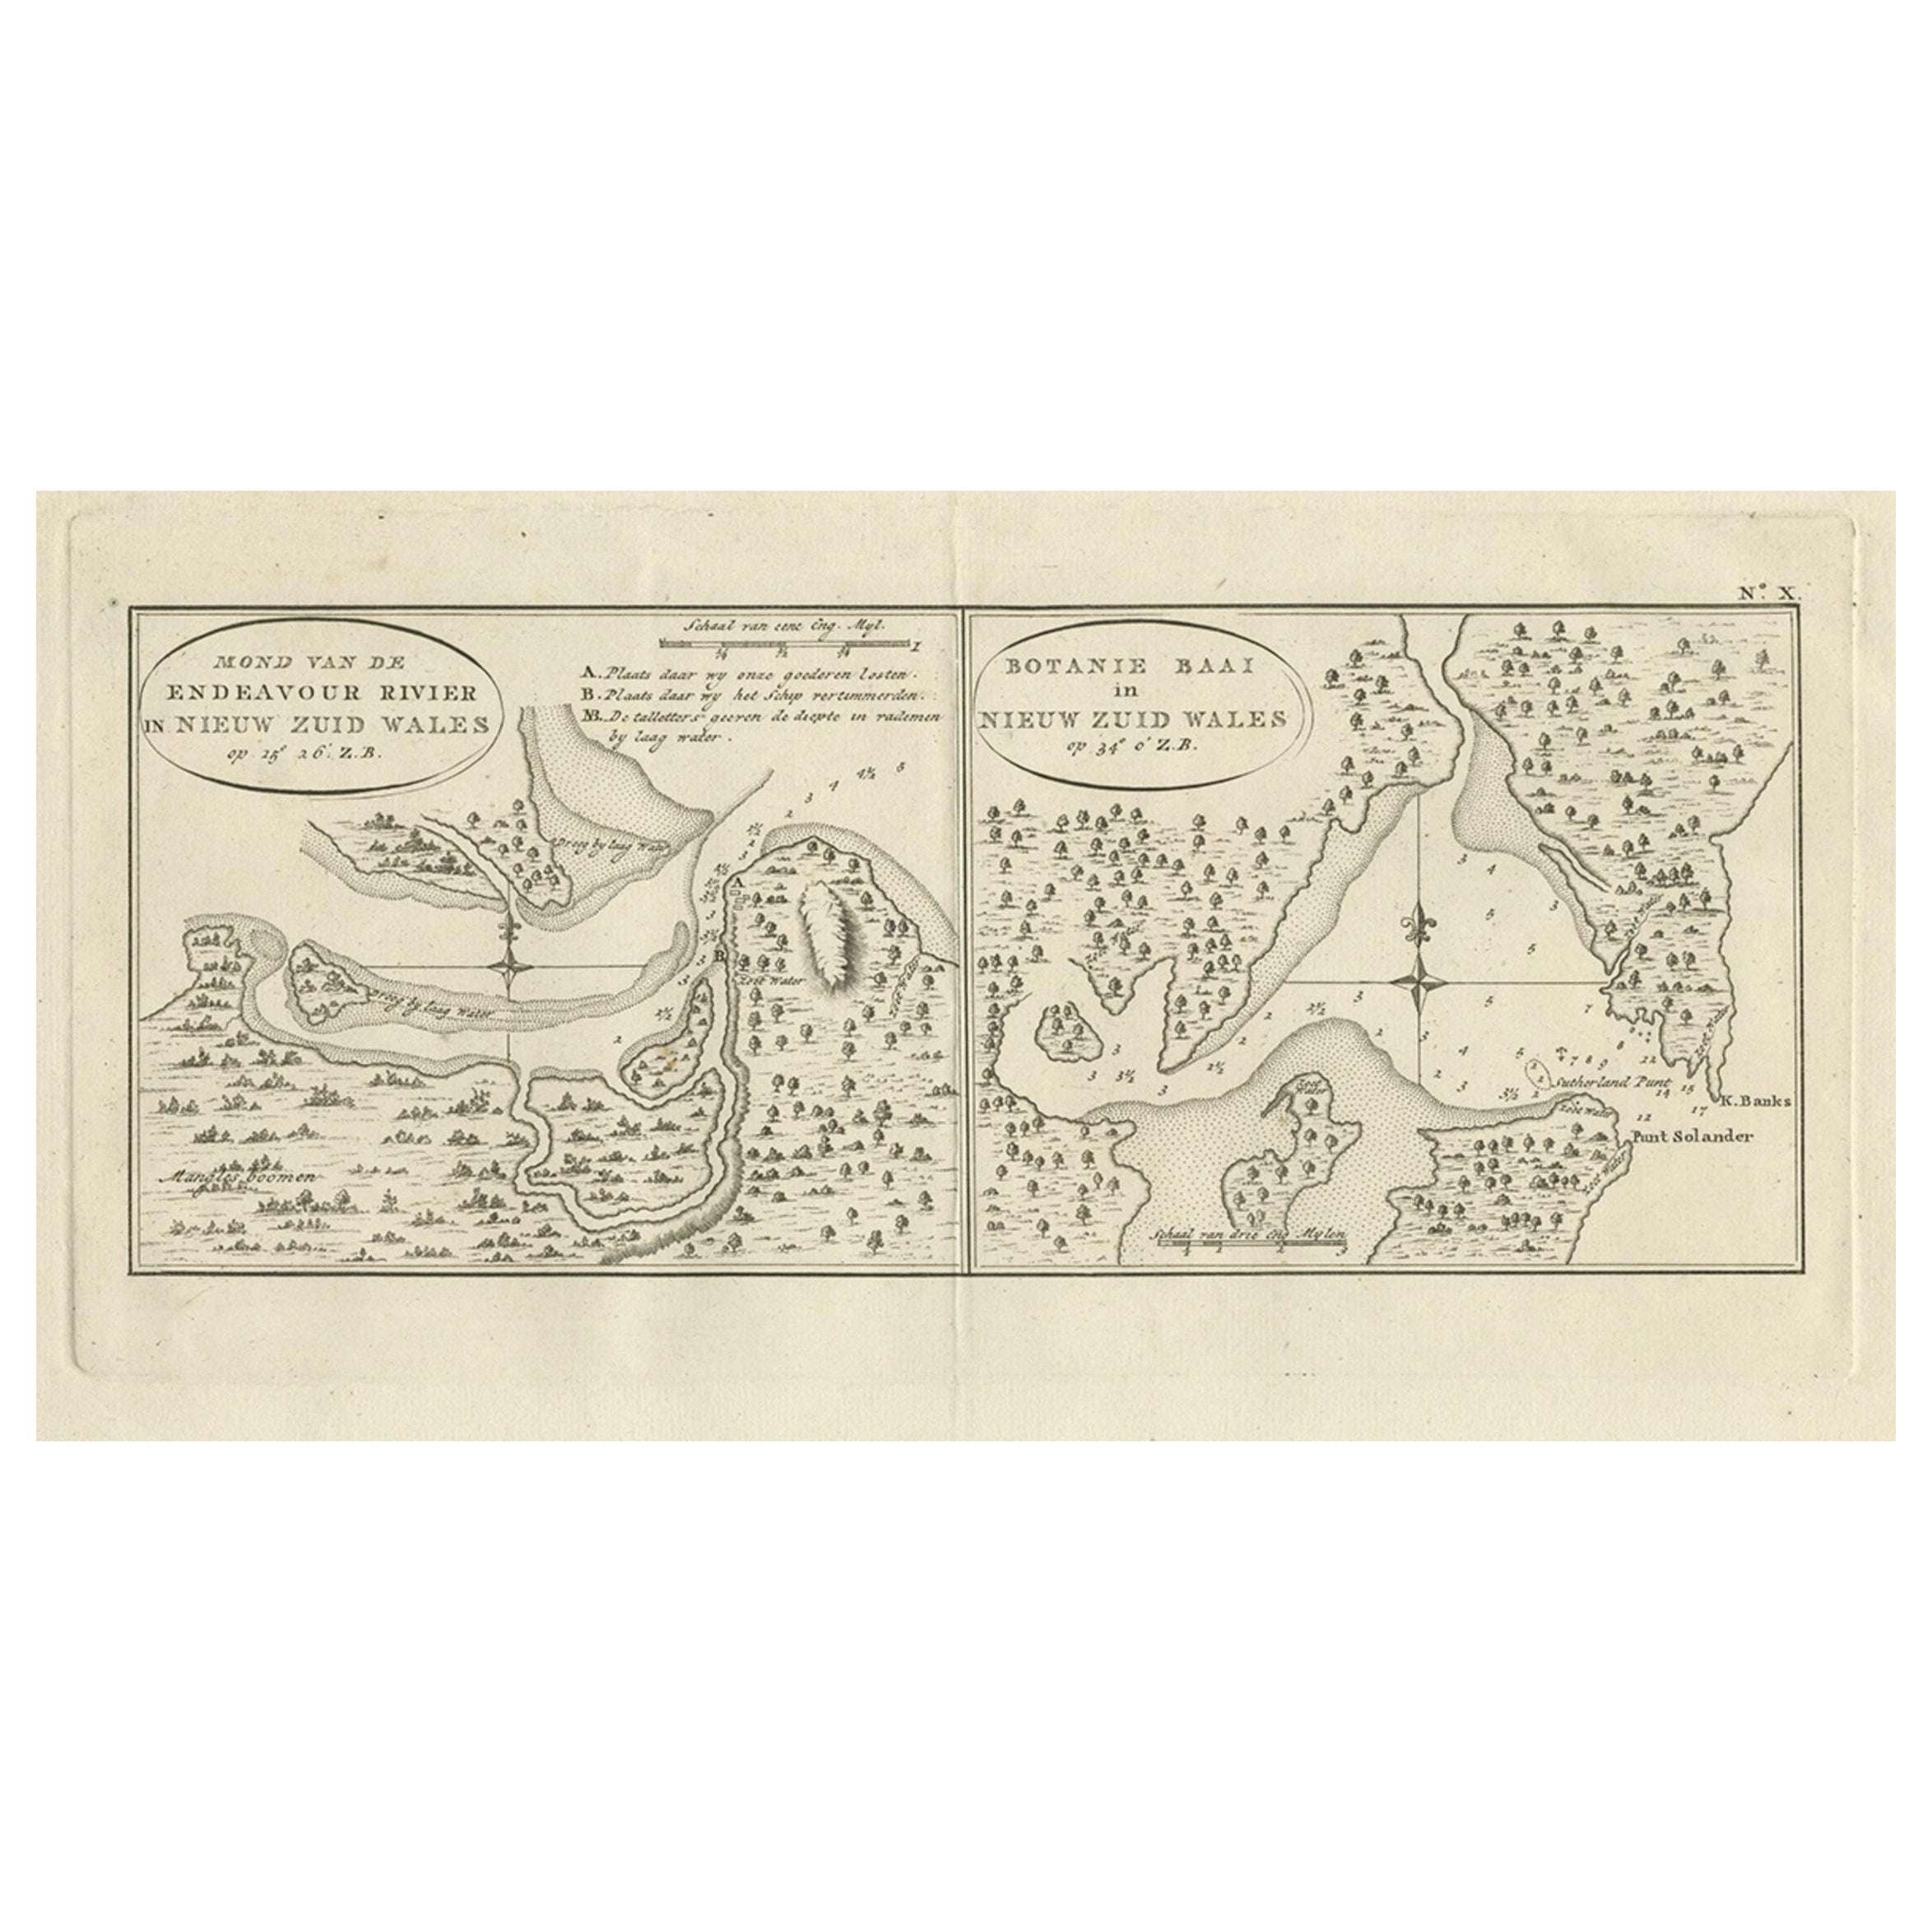 Carte ancienne de la rivière Endeavour et de la baie de Botany, Nouvelle-Galles du Sud, Australie, 1803